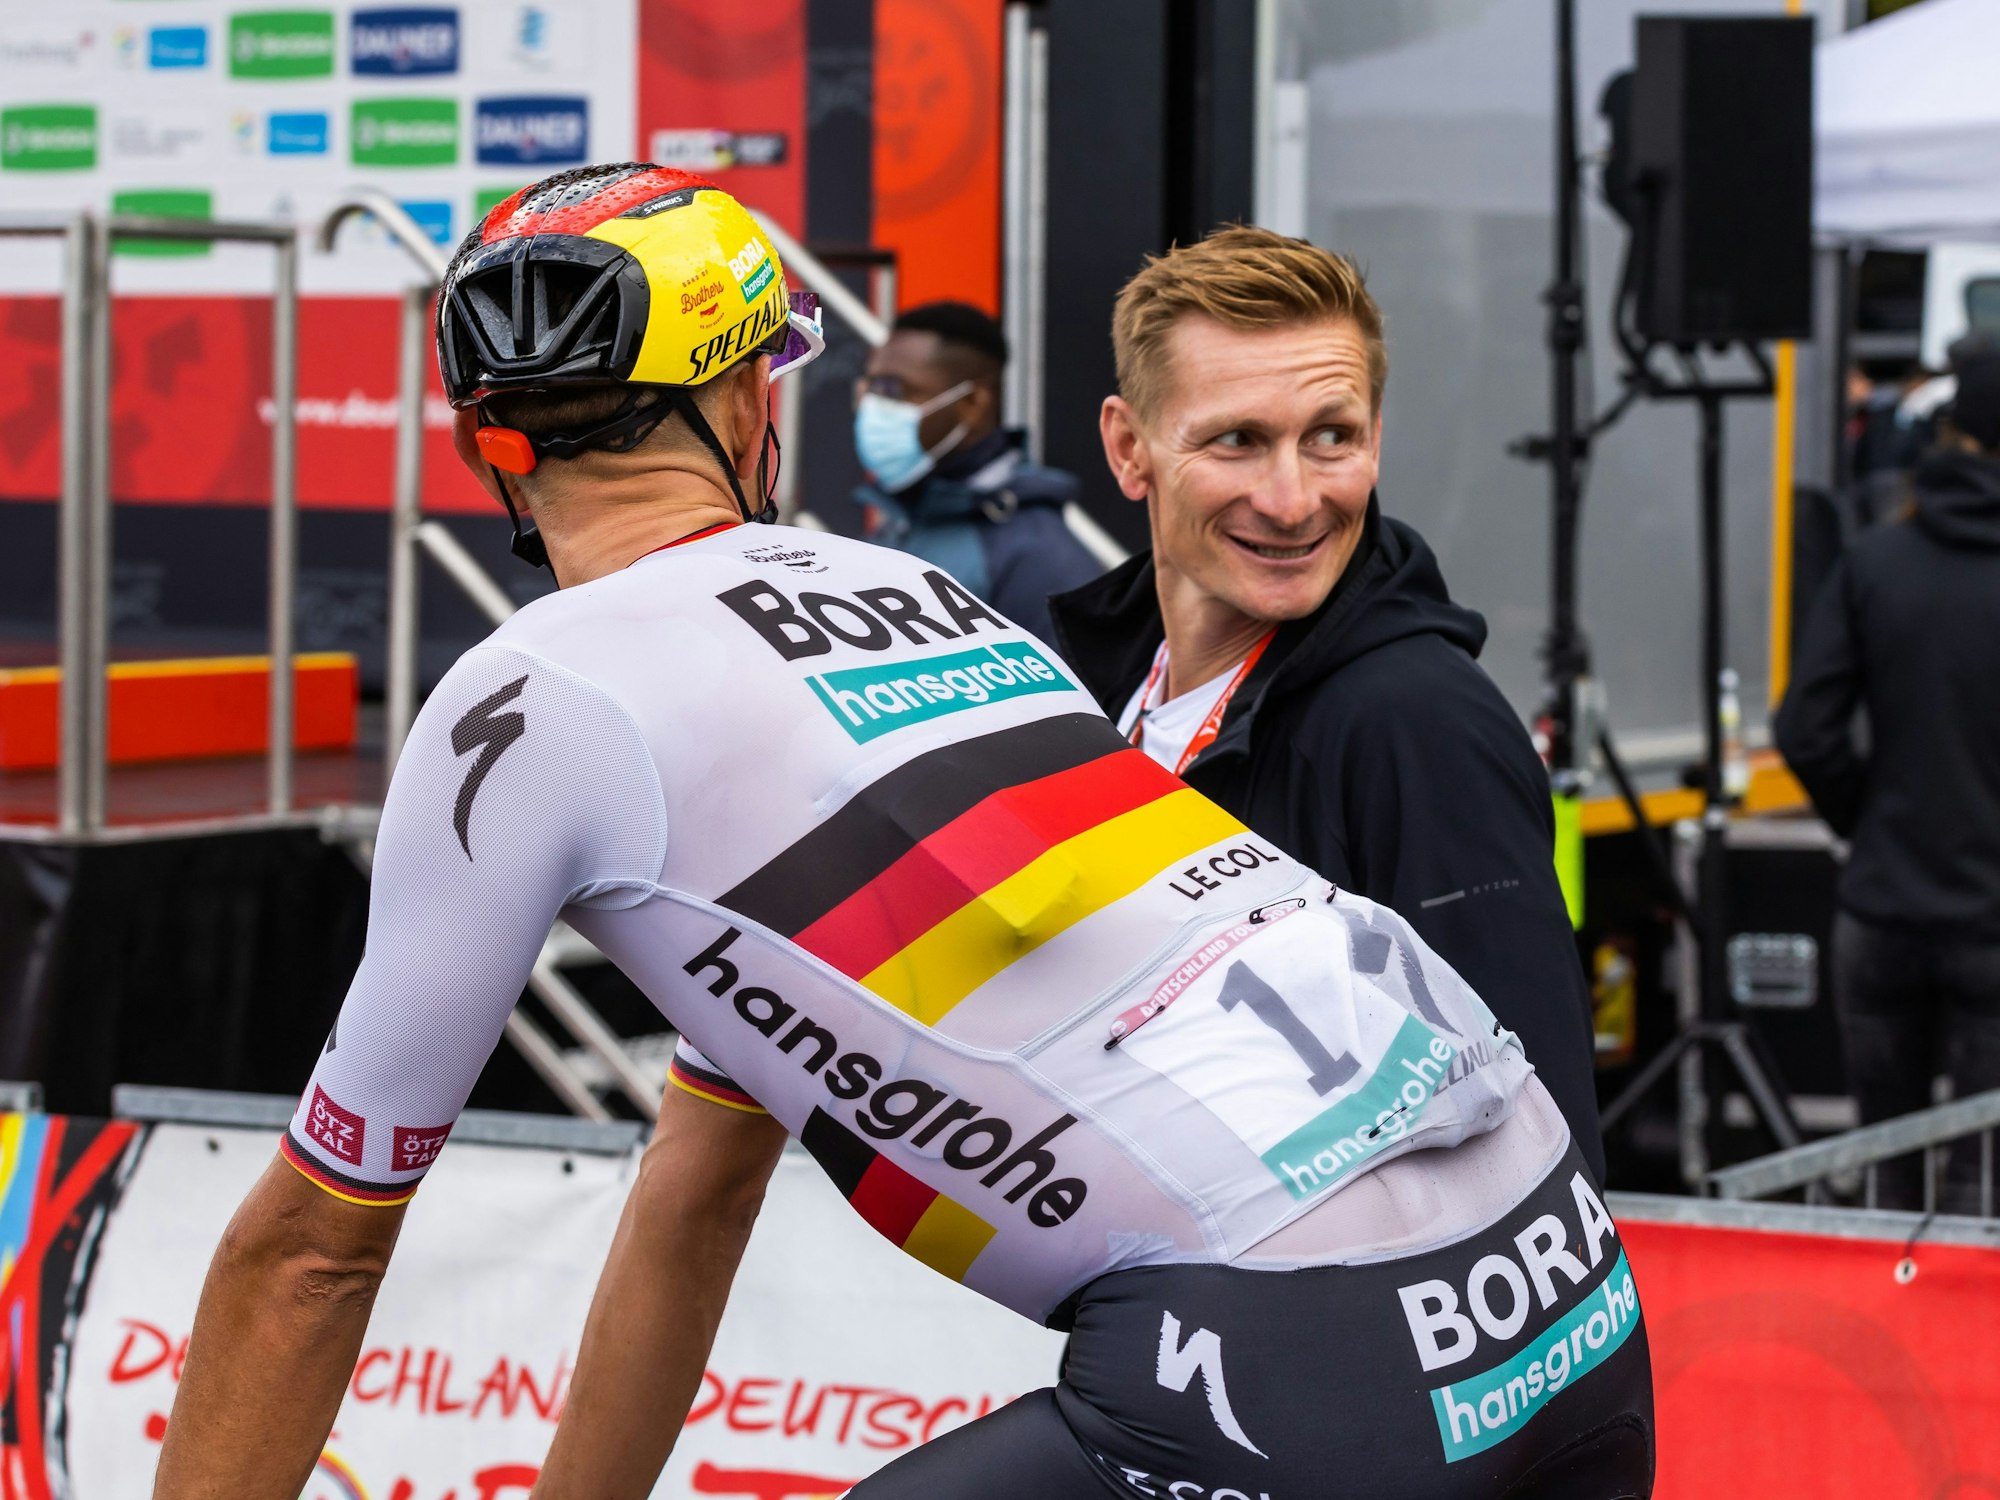 Nils Politt vom Team Bora-Hansgrohe (vorne) im Zielbereich mit dem ehemaligen Radprofi Andre Greipel.